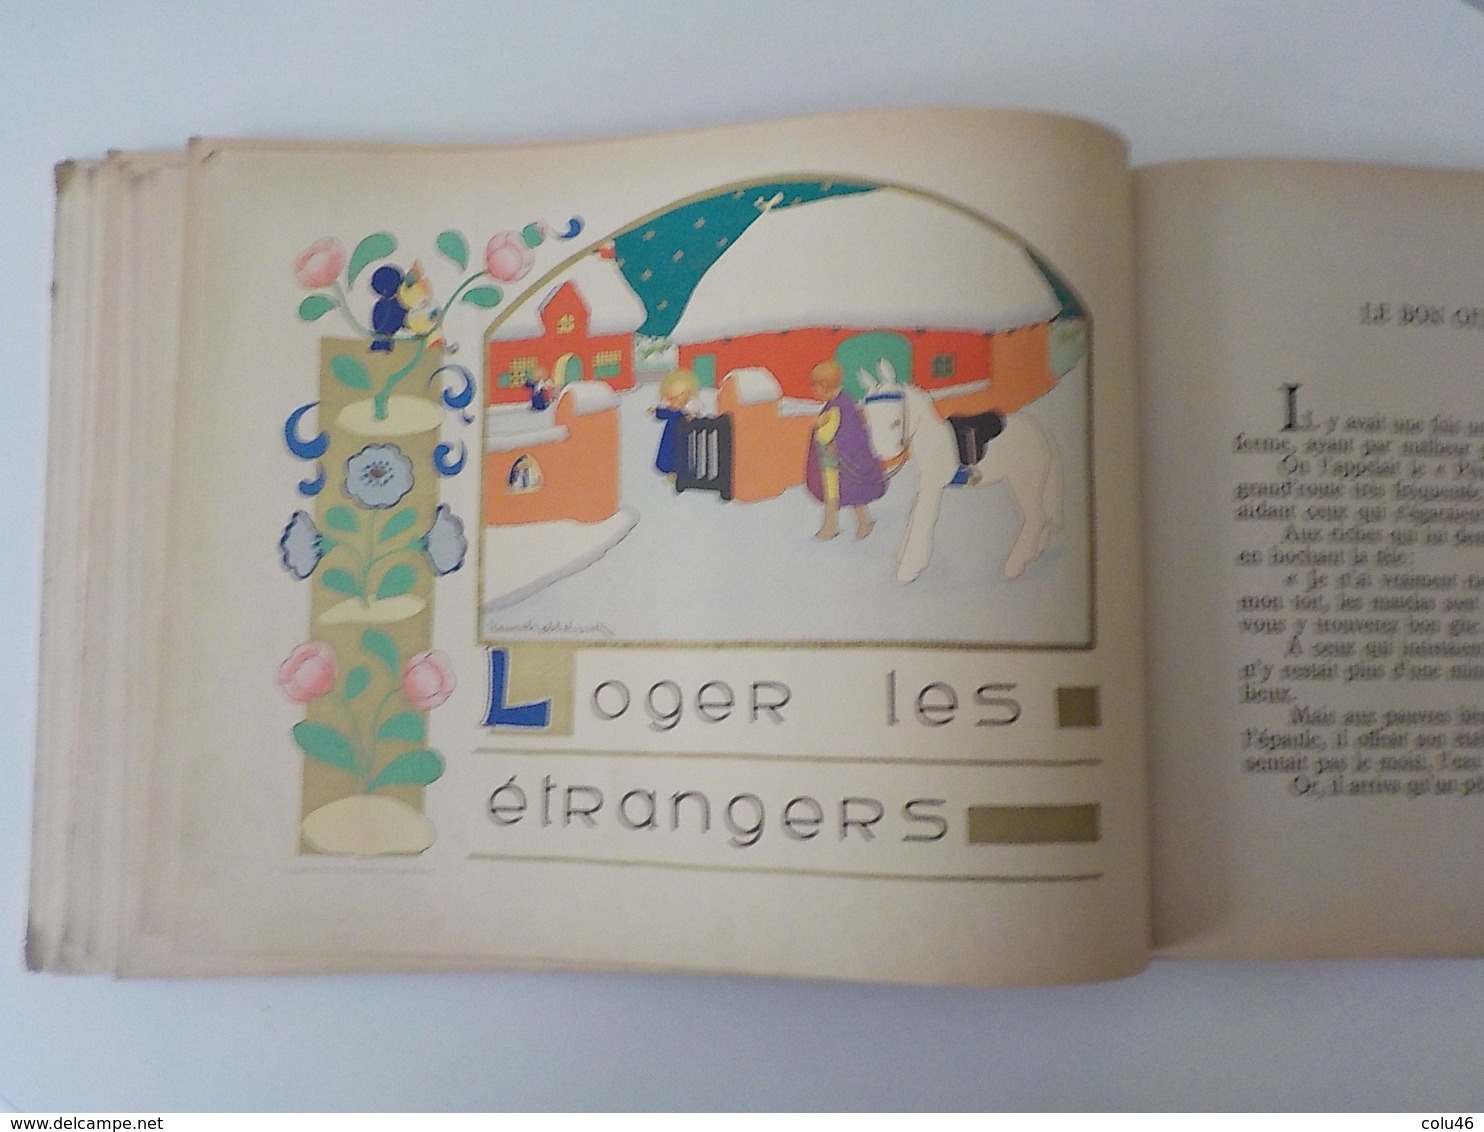 ancien livre enfant illustrations Jeanne Hebbelynck Petits Contes de chez nous Desclée De Brouwer anges angelots